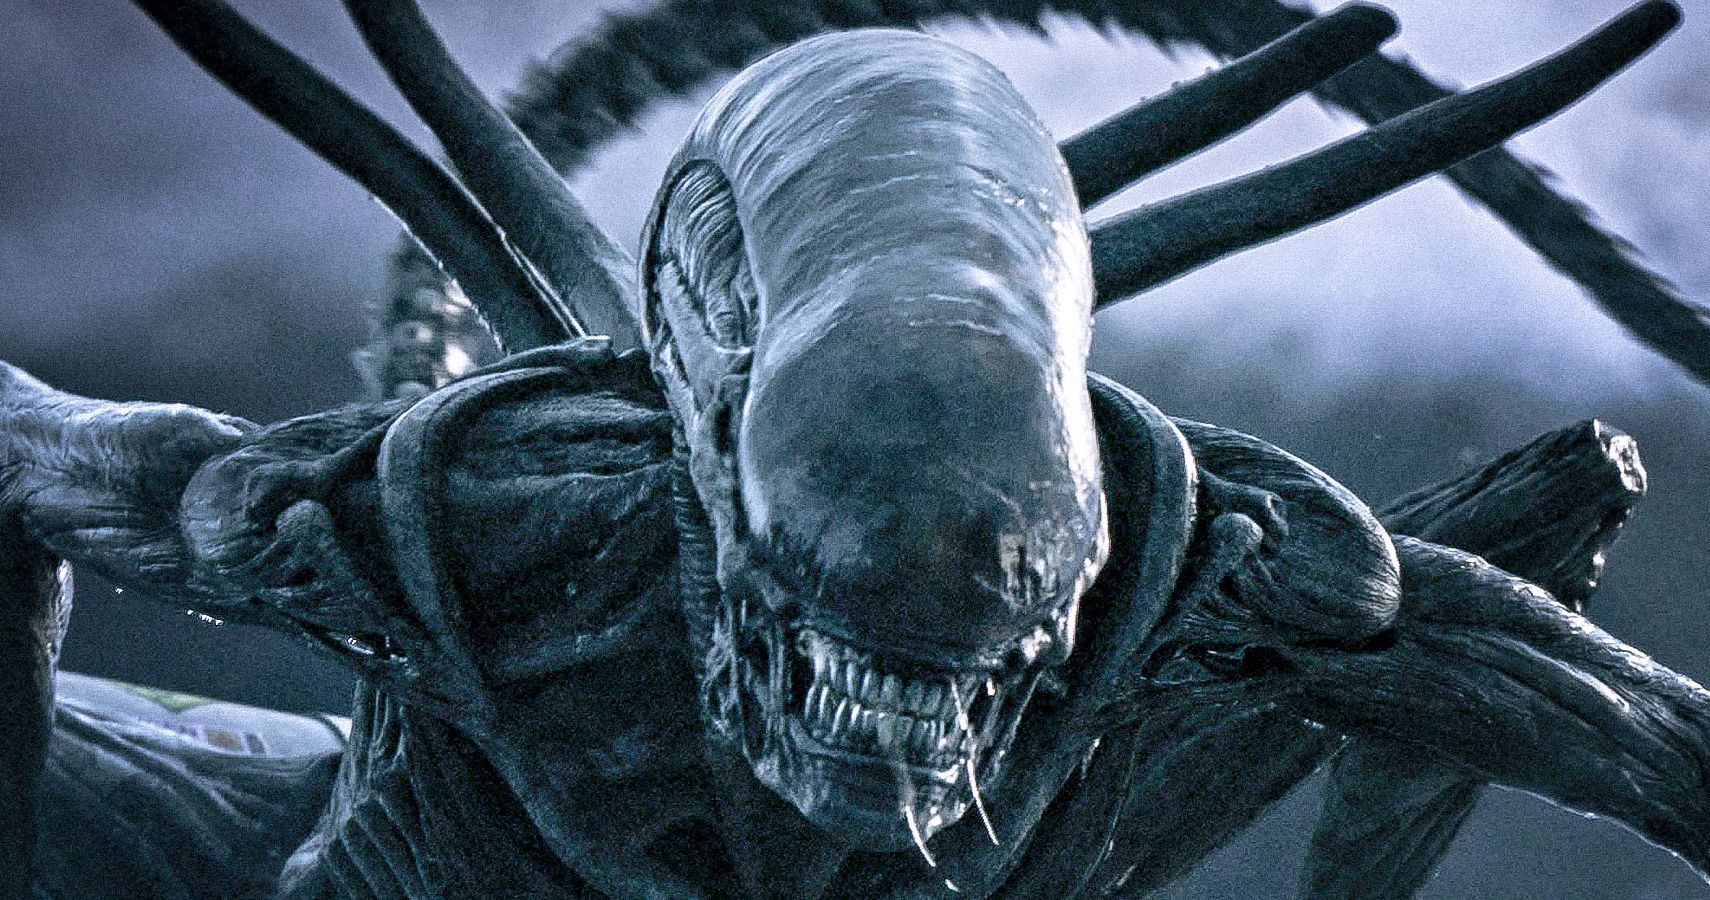 O criador alienígena Ridley Scott acha que a série precisa evoluir novamente